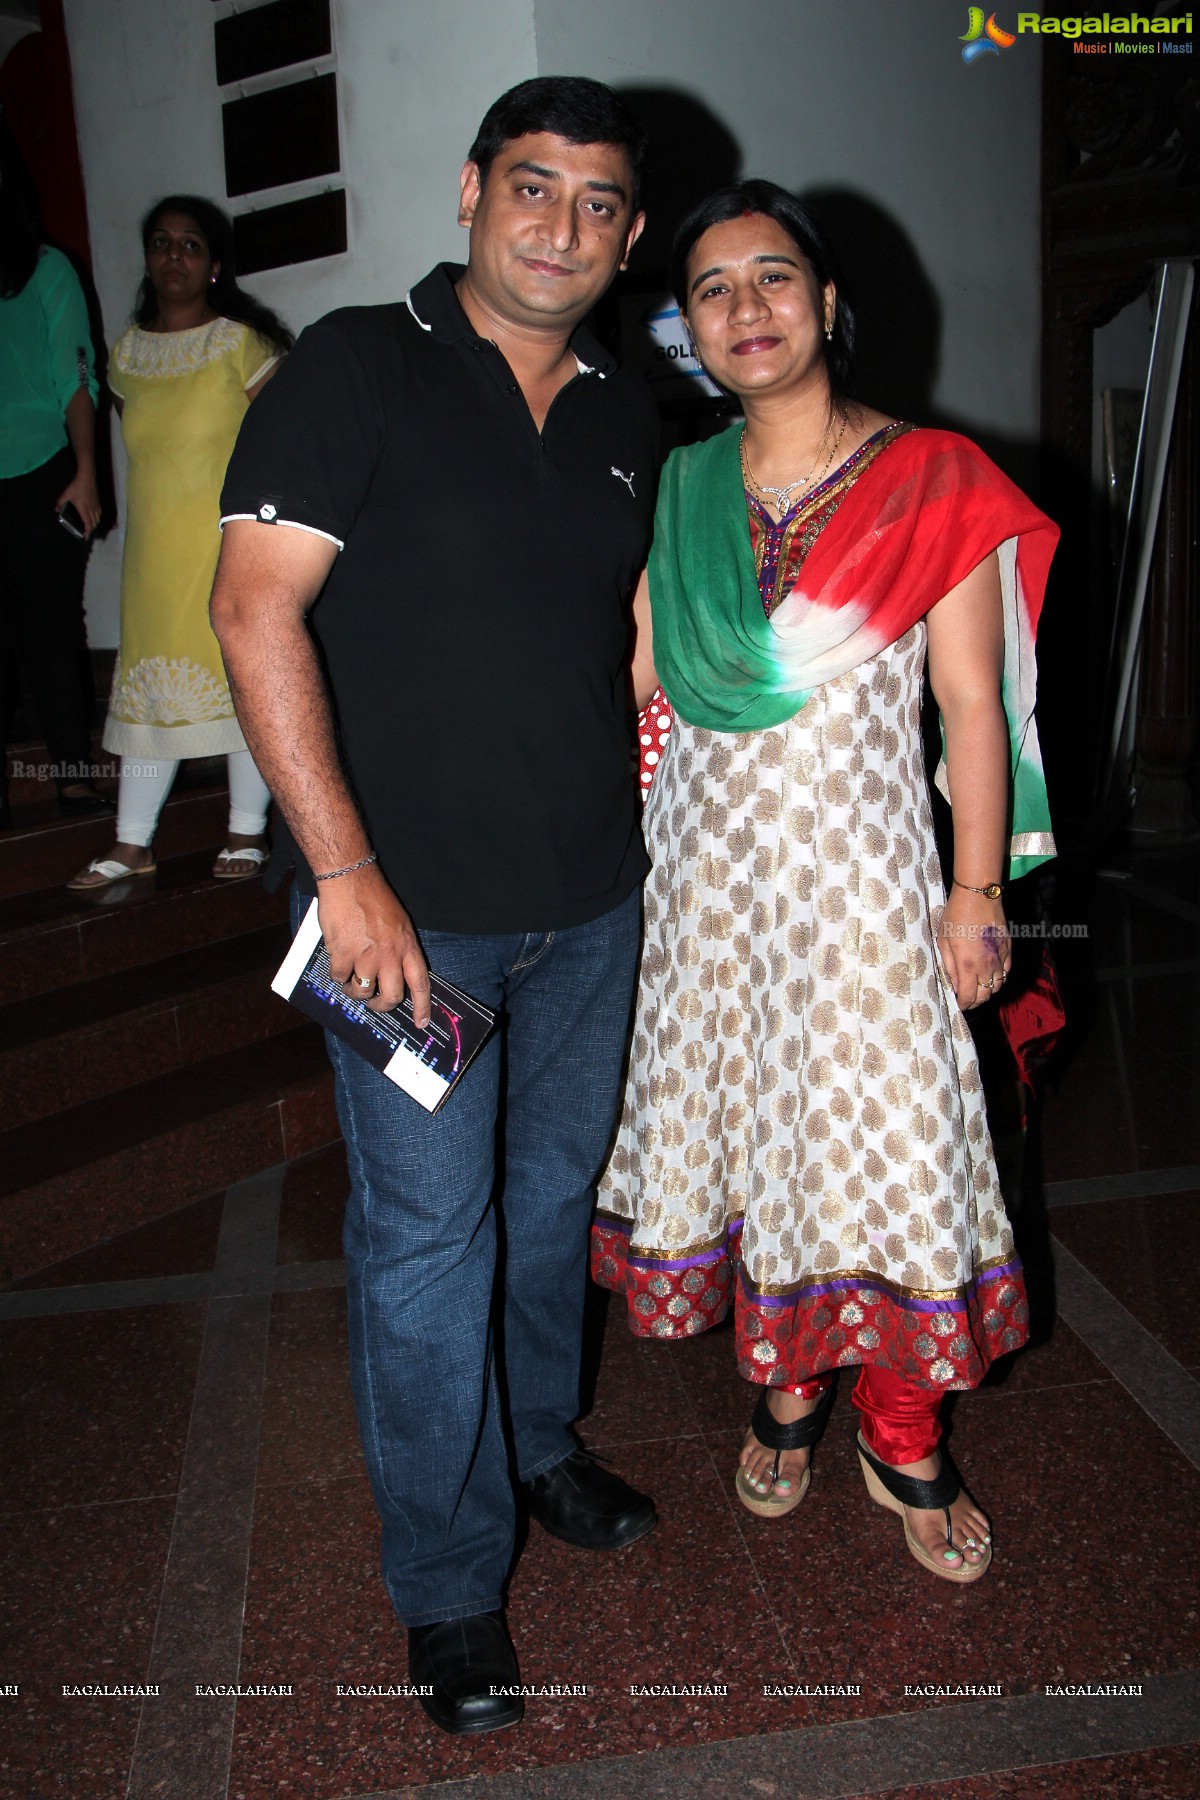 Benny Dayal & Anusha Mani Live in Concert at Shilpakala Vedika, Hyderabad